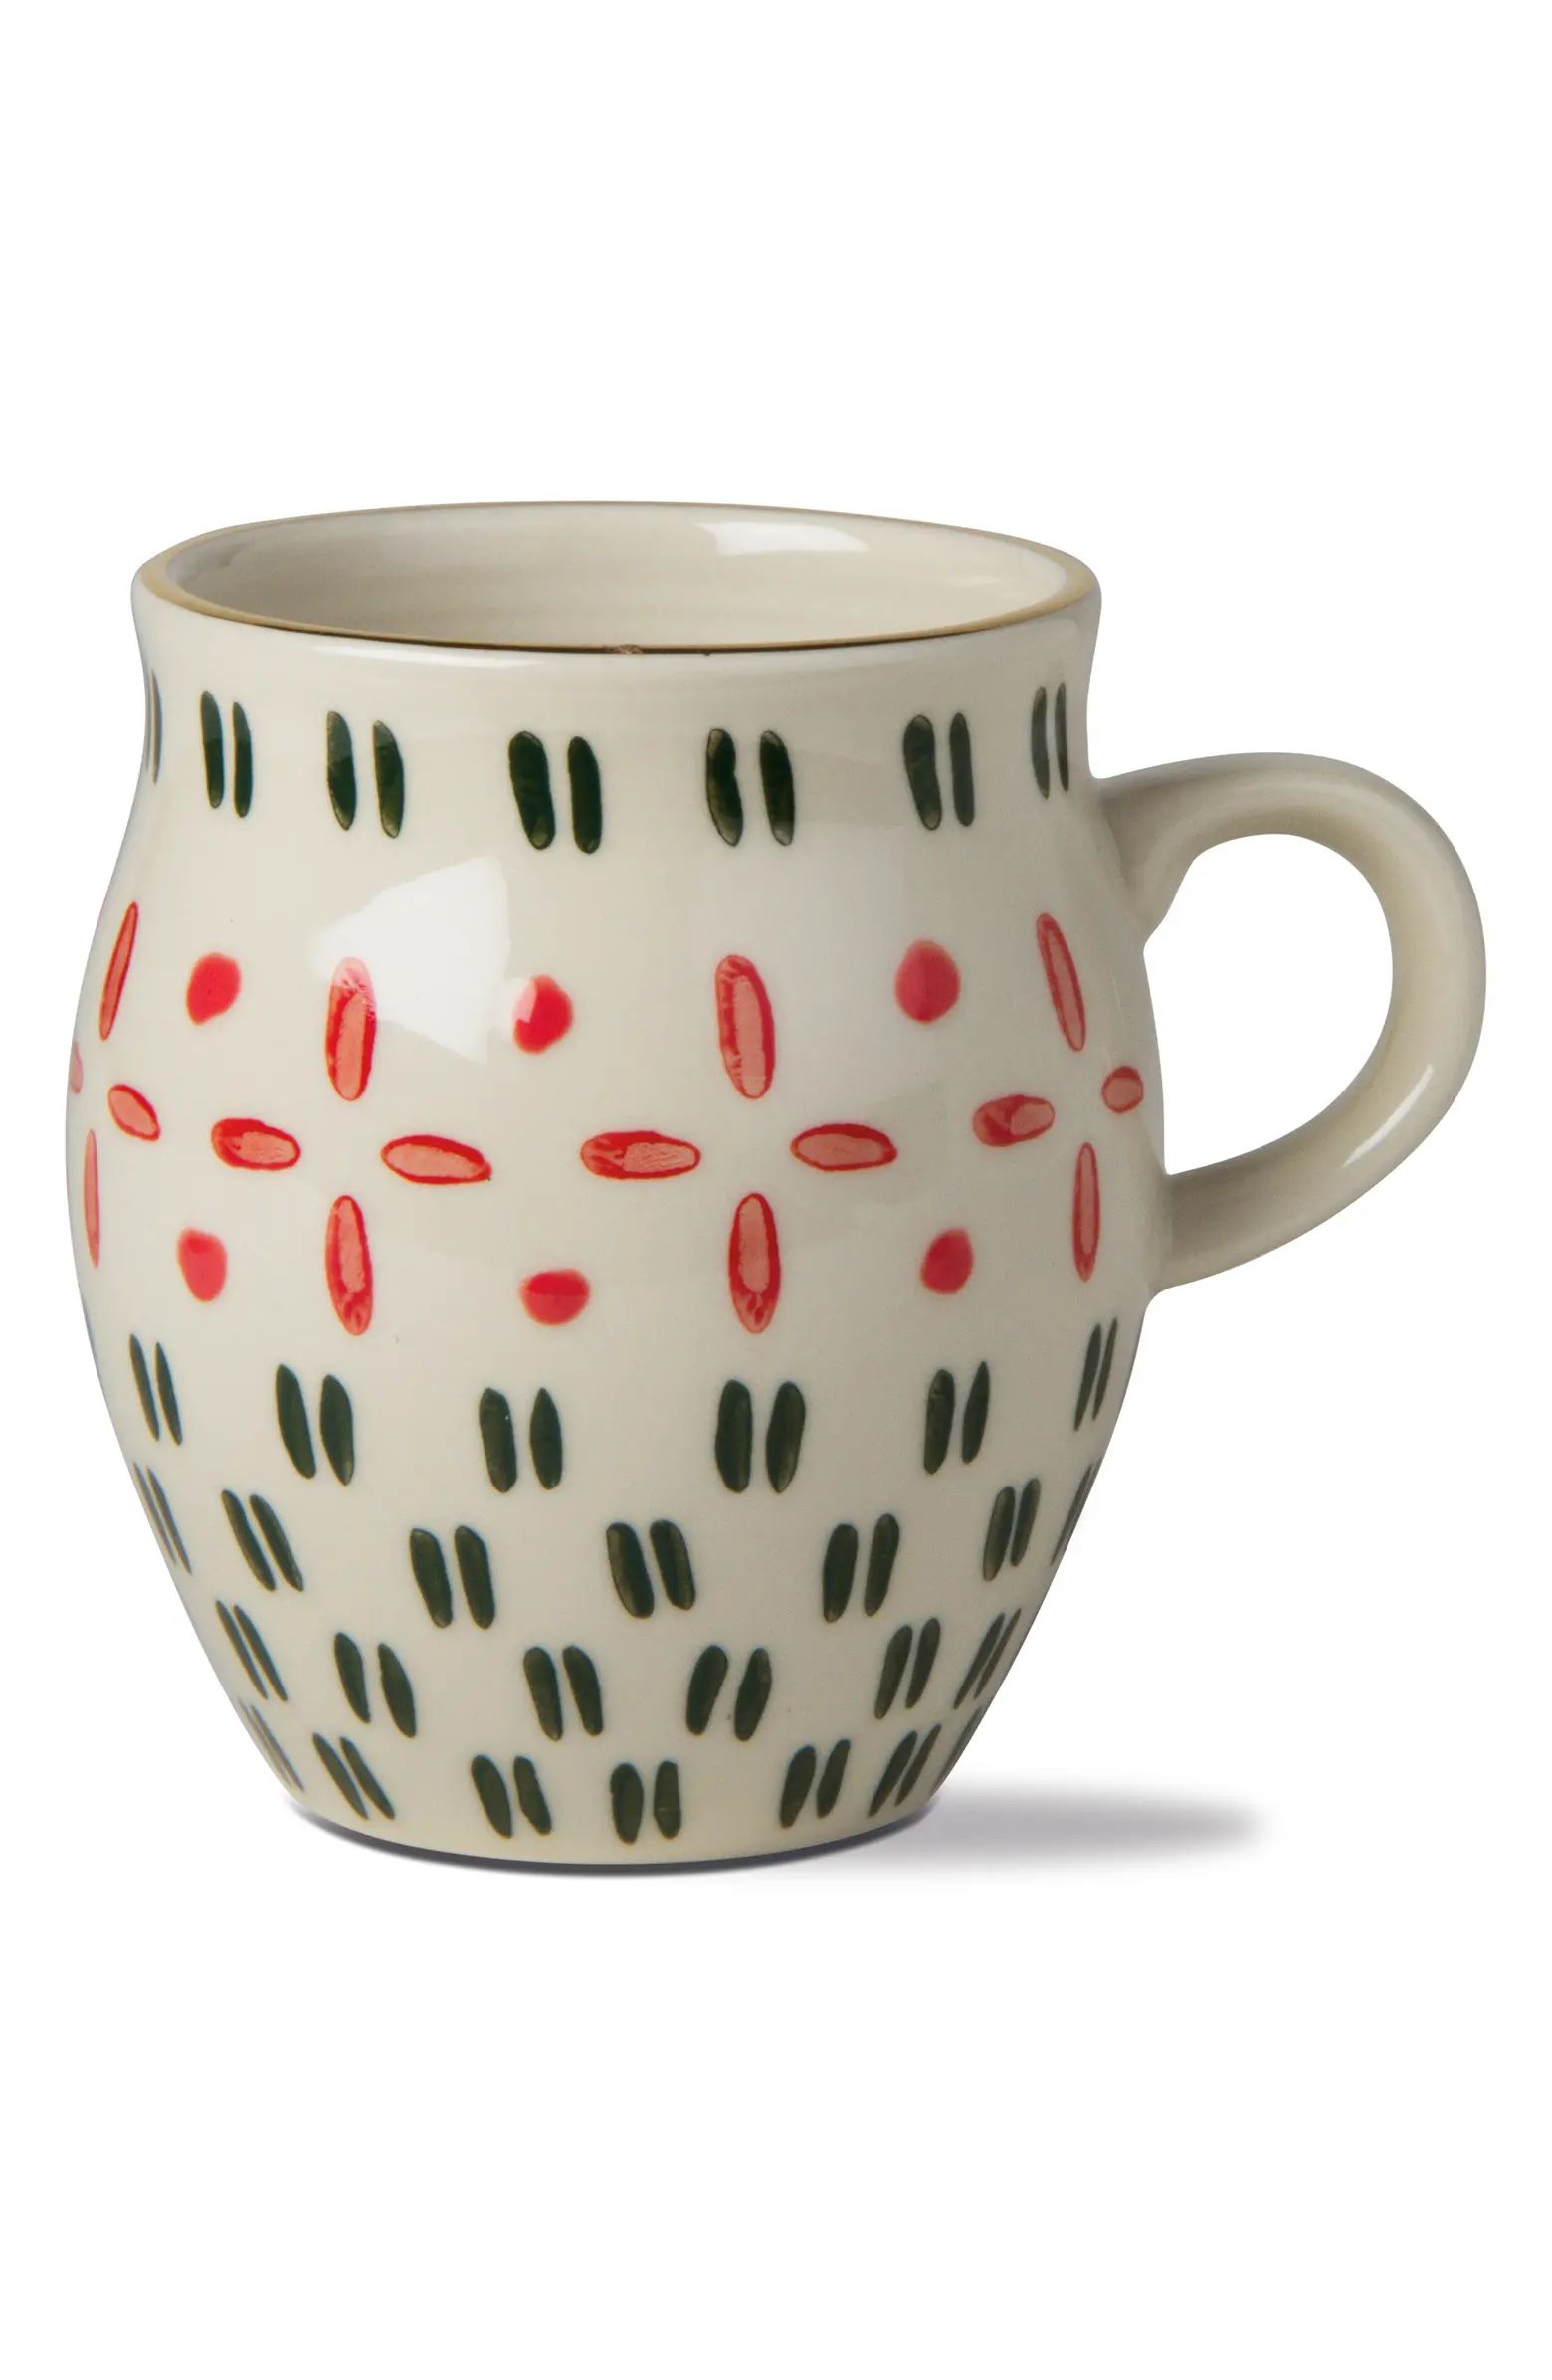 Joyful Hand Stamped Mug | Nordstrom